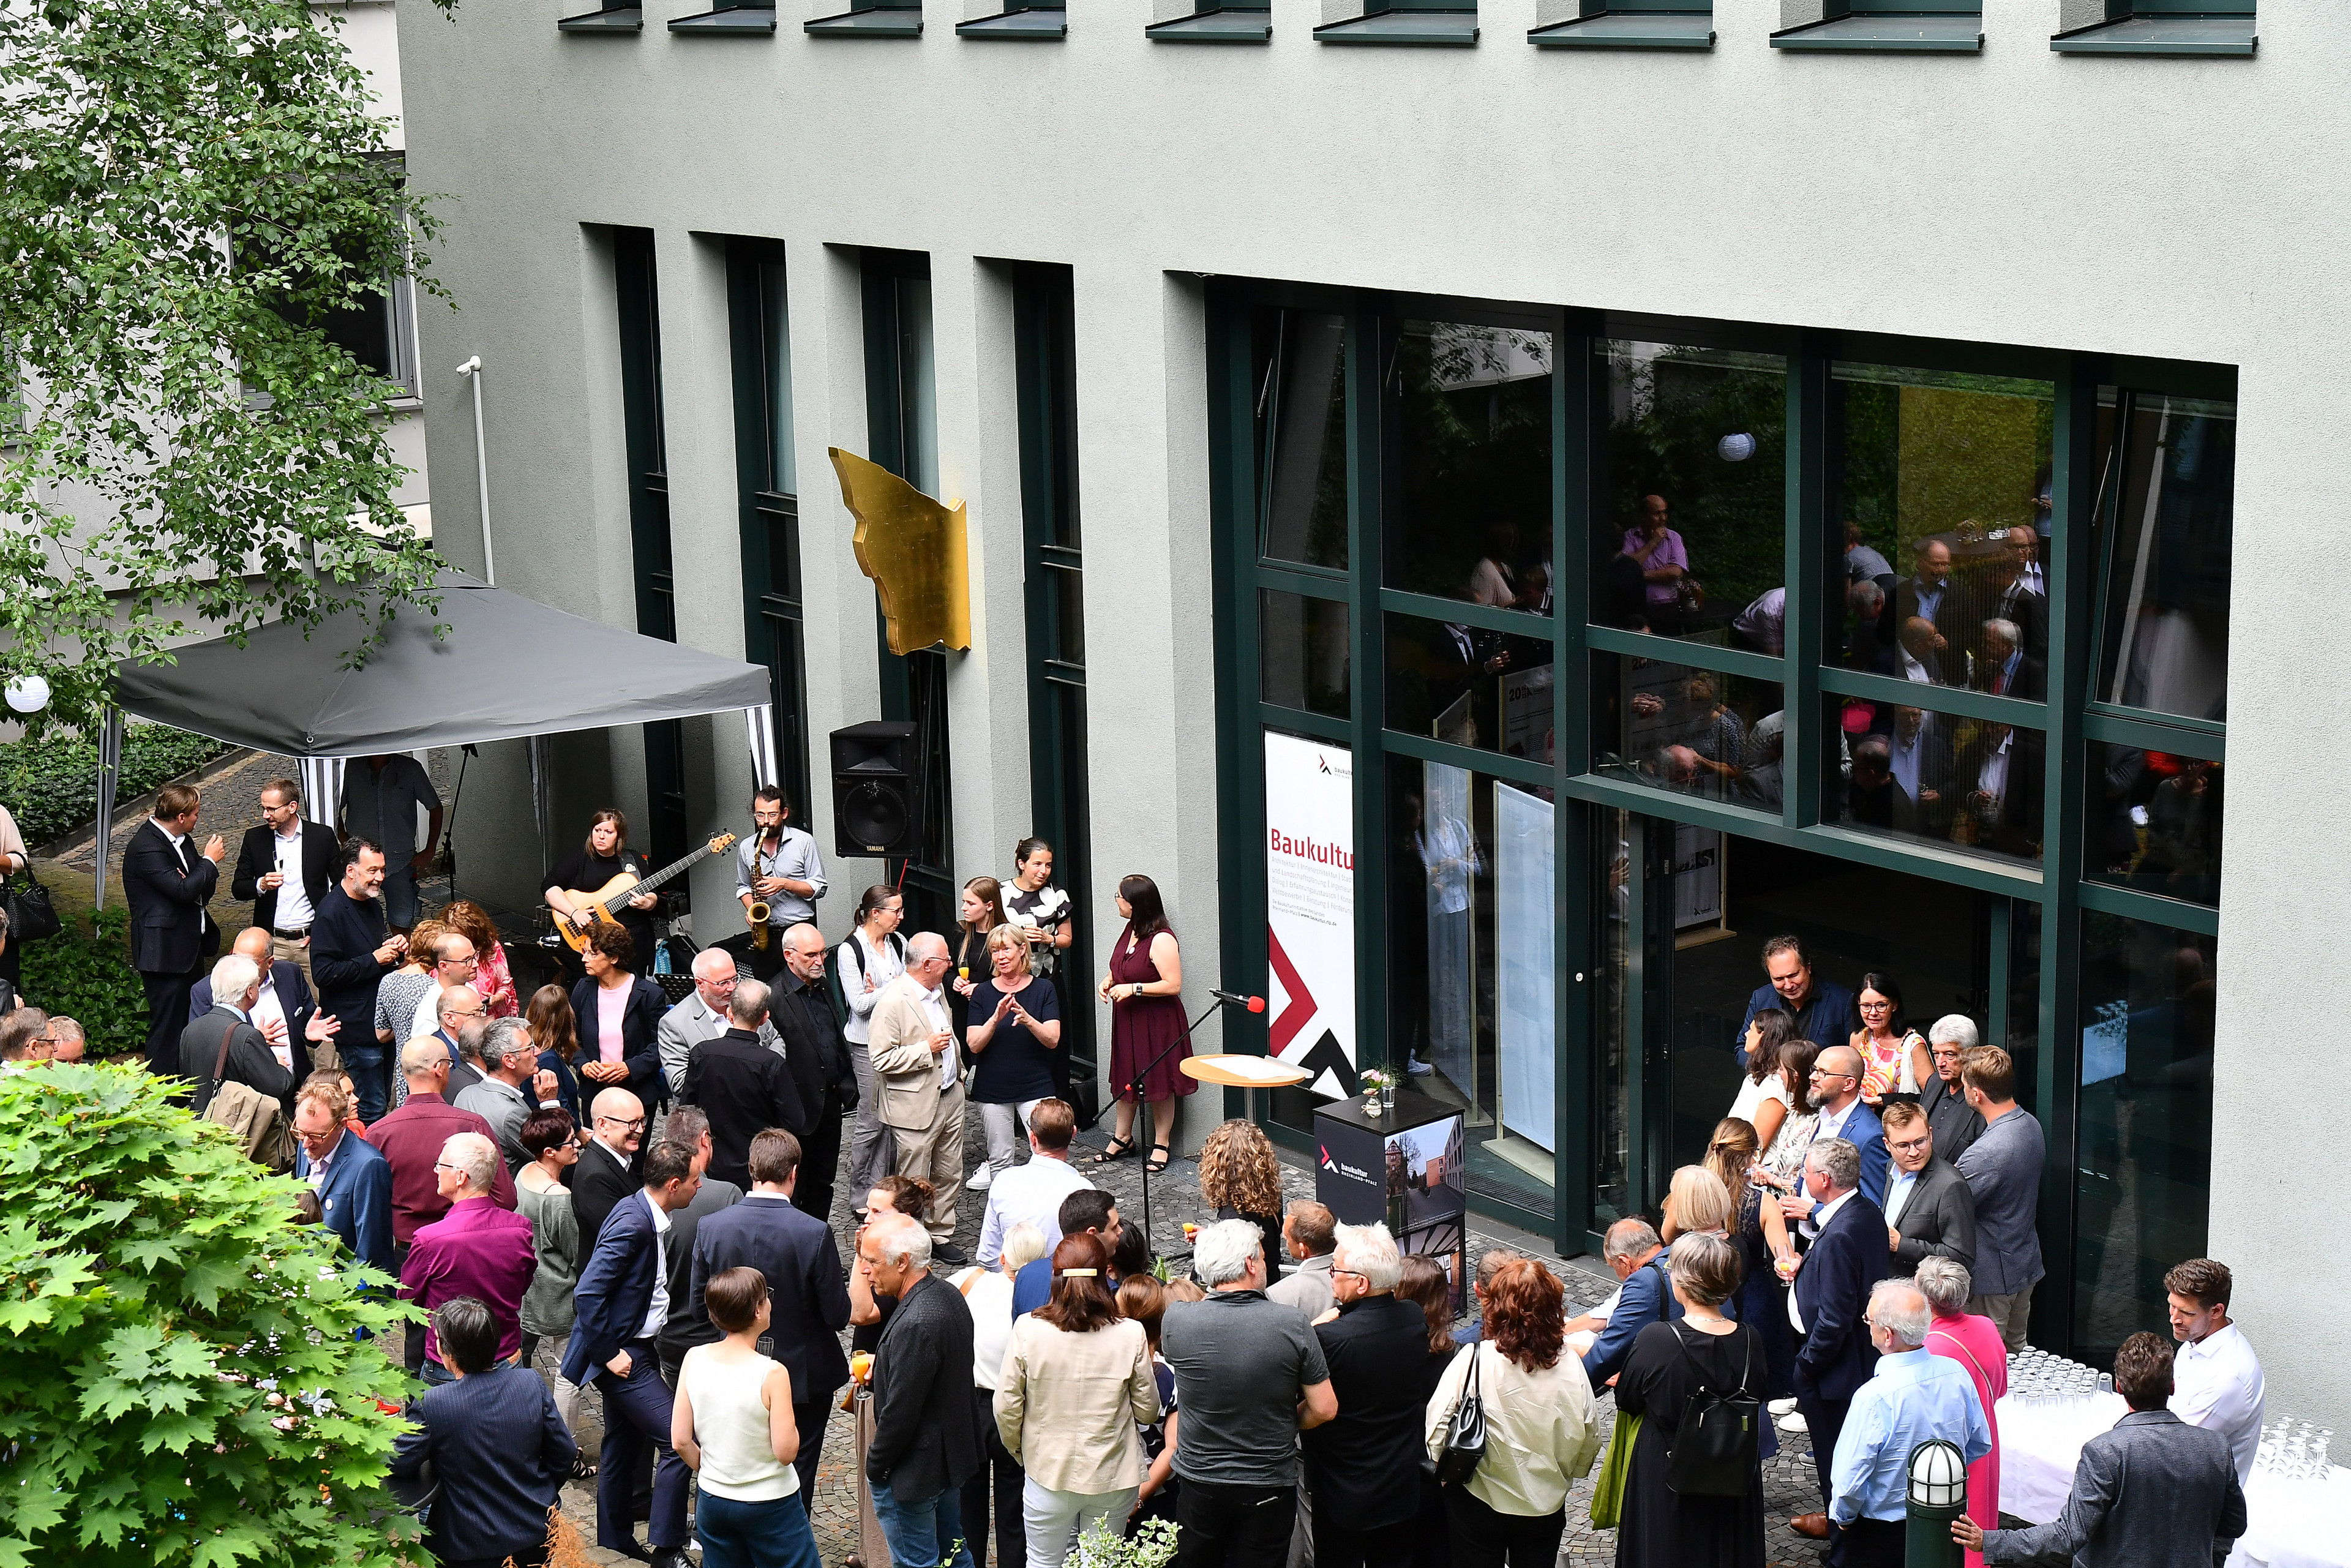 Gäste der Jubiläumsfeier 20 Baukultur Rheinland-Pfalz im Innenhof des Ministeriums der Finanzen Rheinland-Pfalz, von oben fotografiert